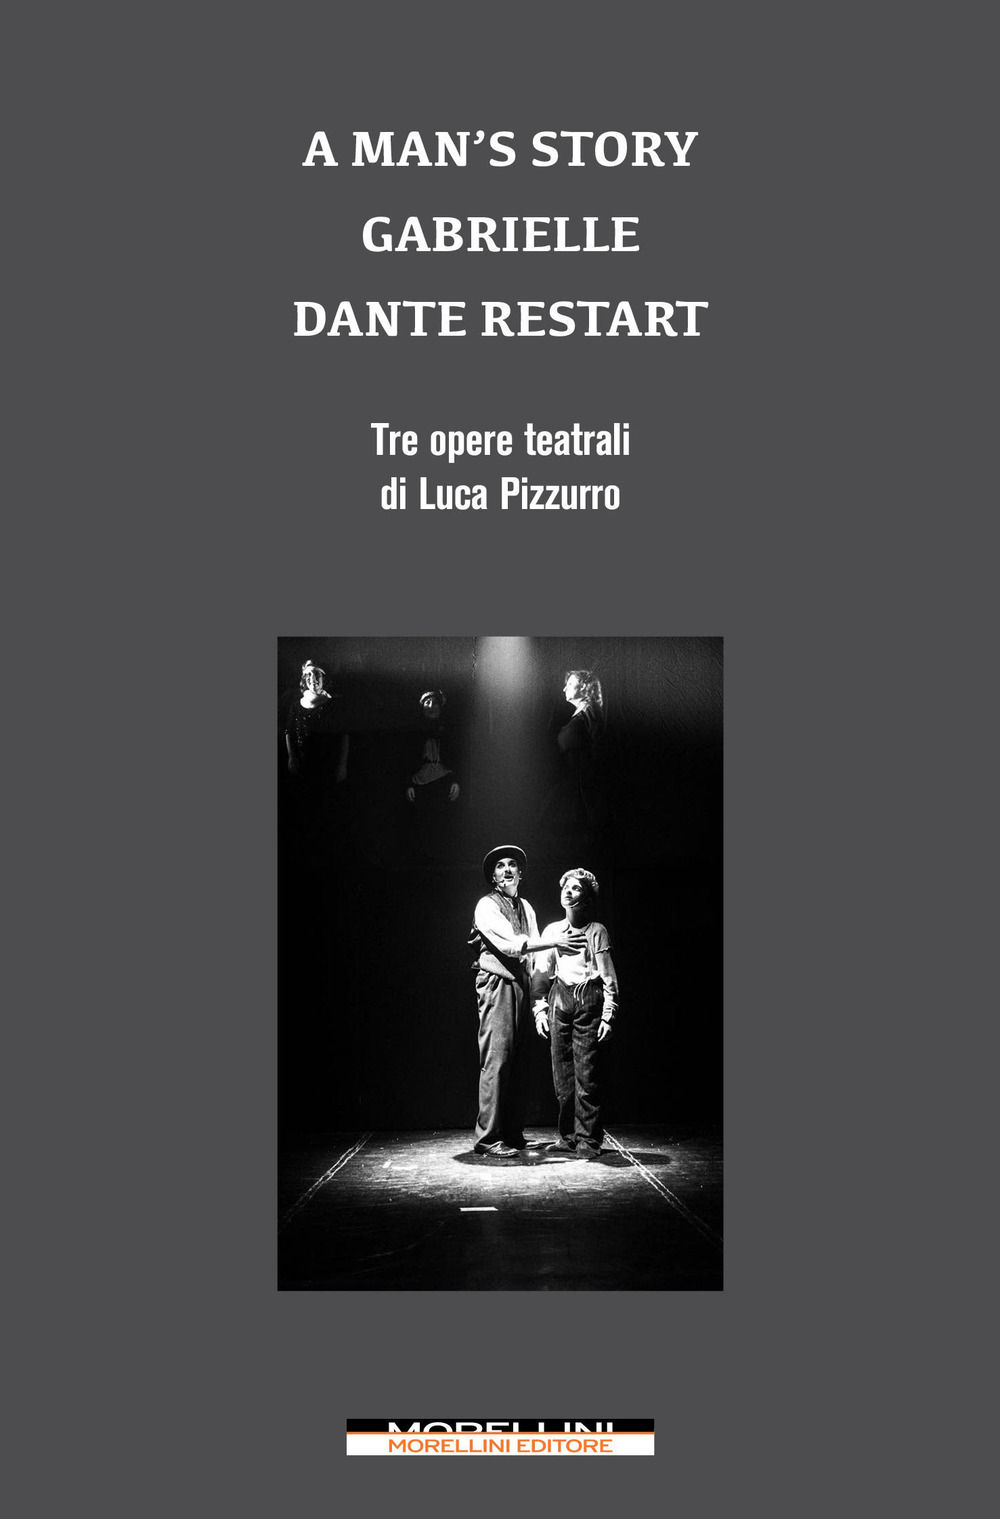 A man's story-Gabrielle-Dante restart. Tre opere teatrali di Luca Pizzurro